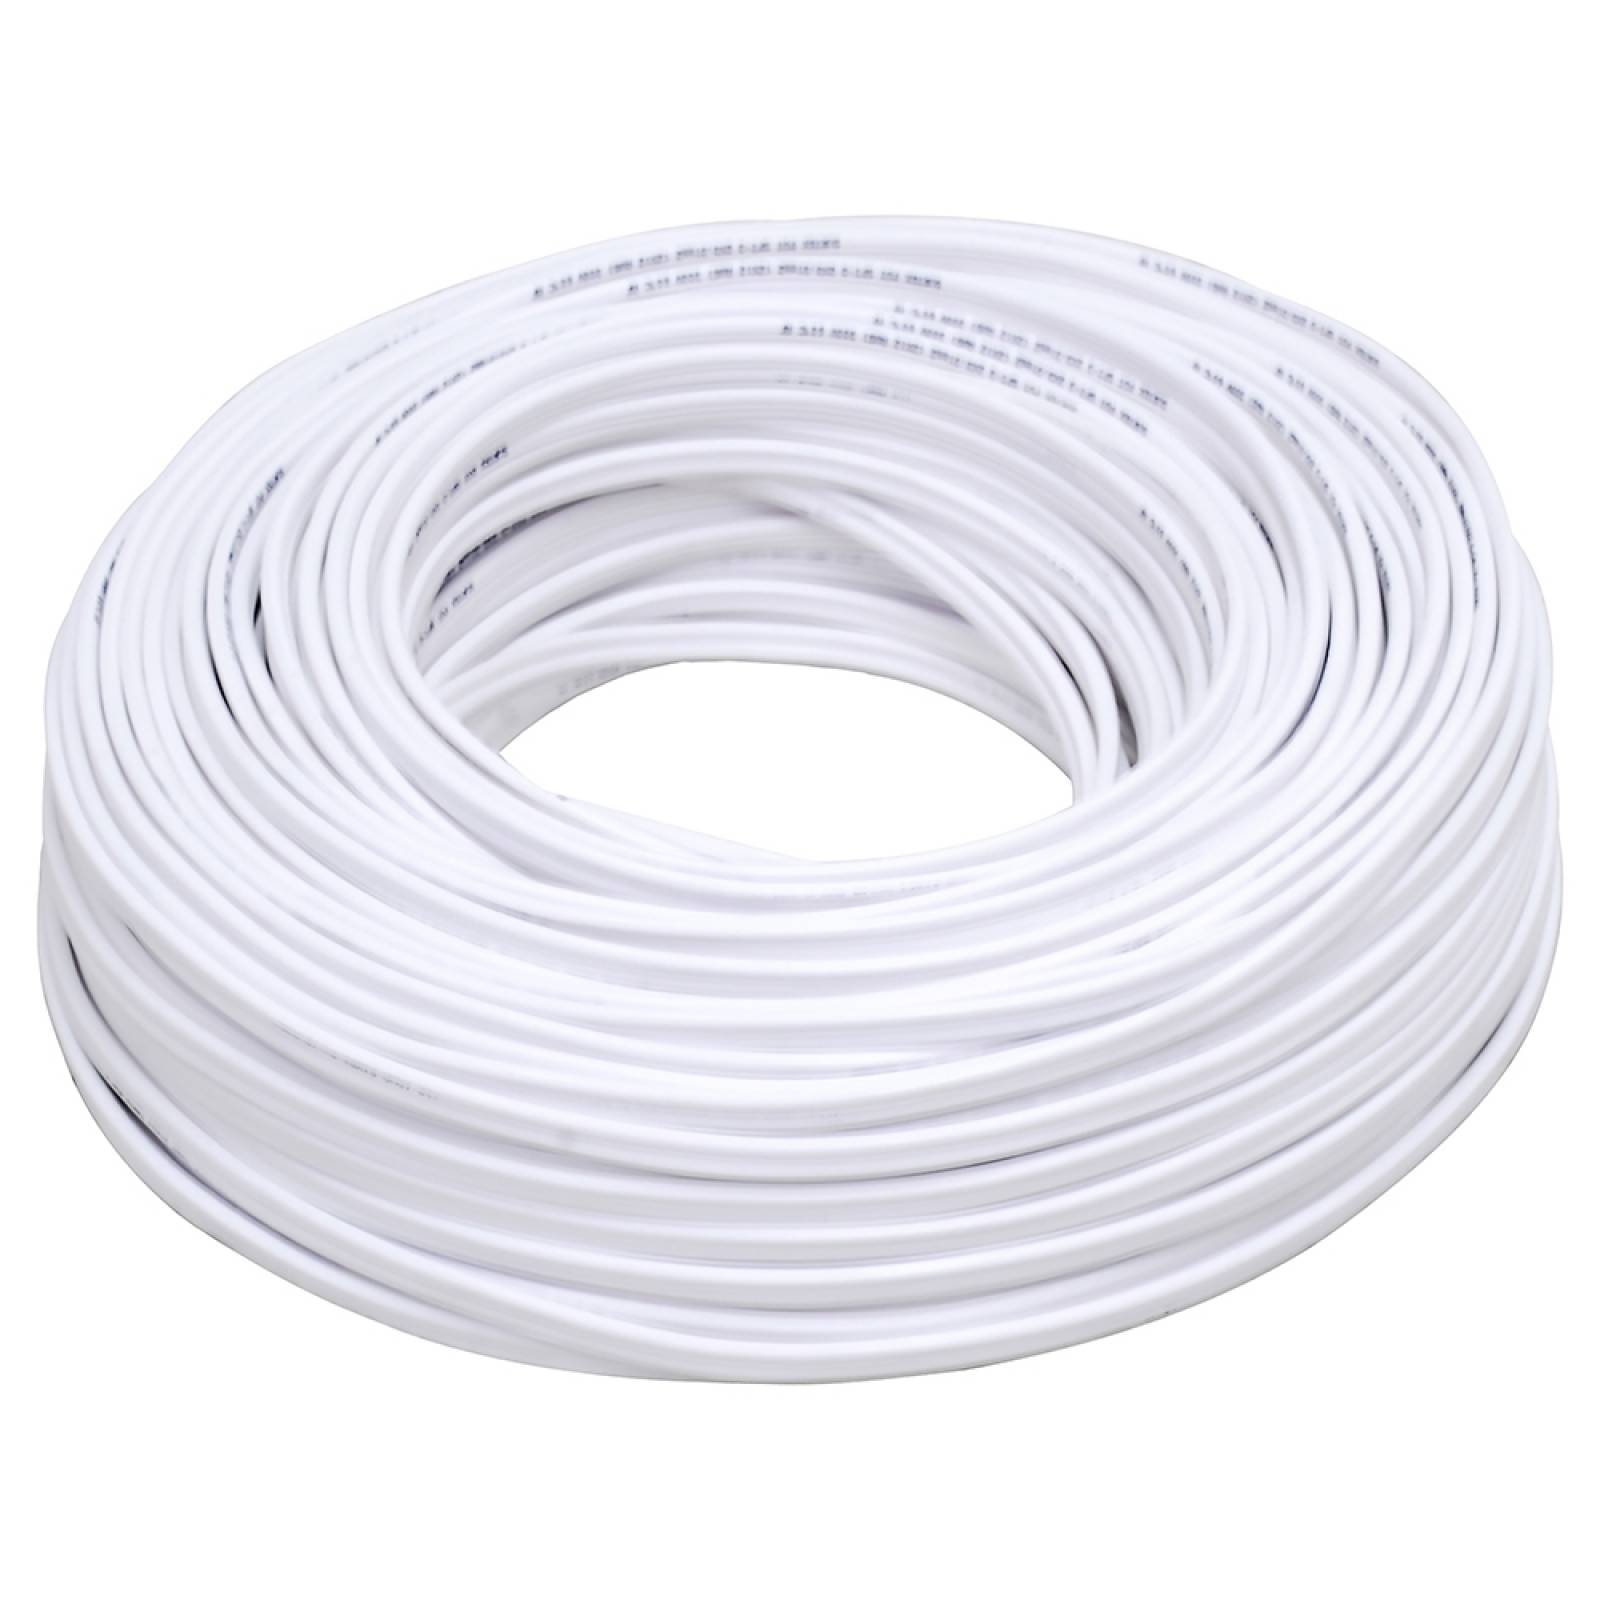 Cable Eléctrico Tipo Pot Cal. 2 X 12 100mt Blanco 136926 Sur 